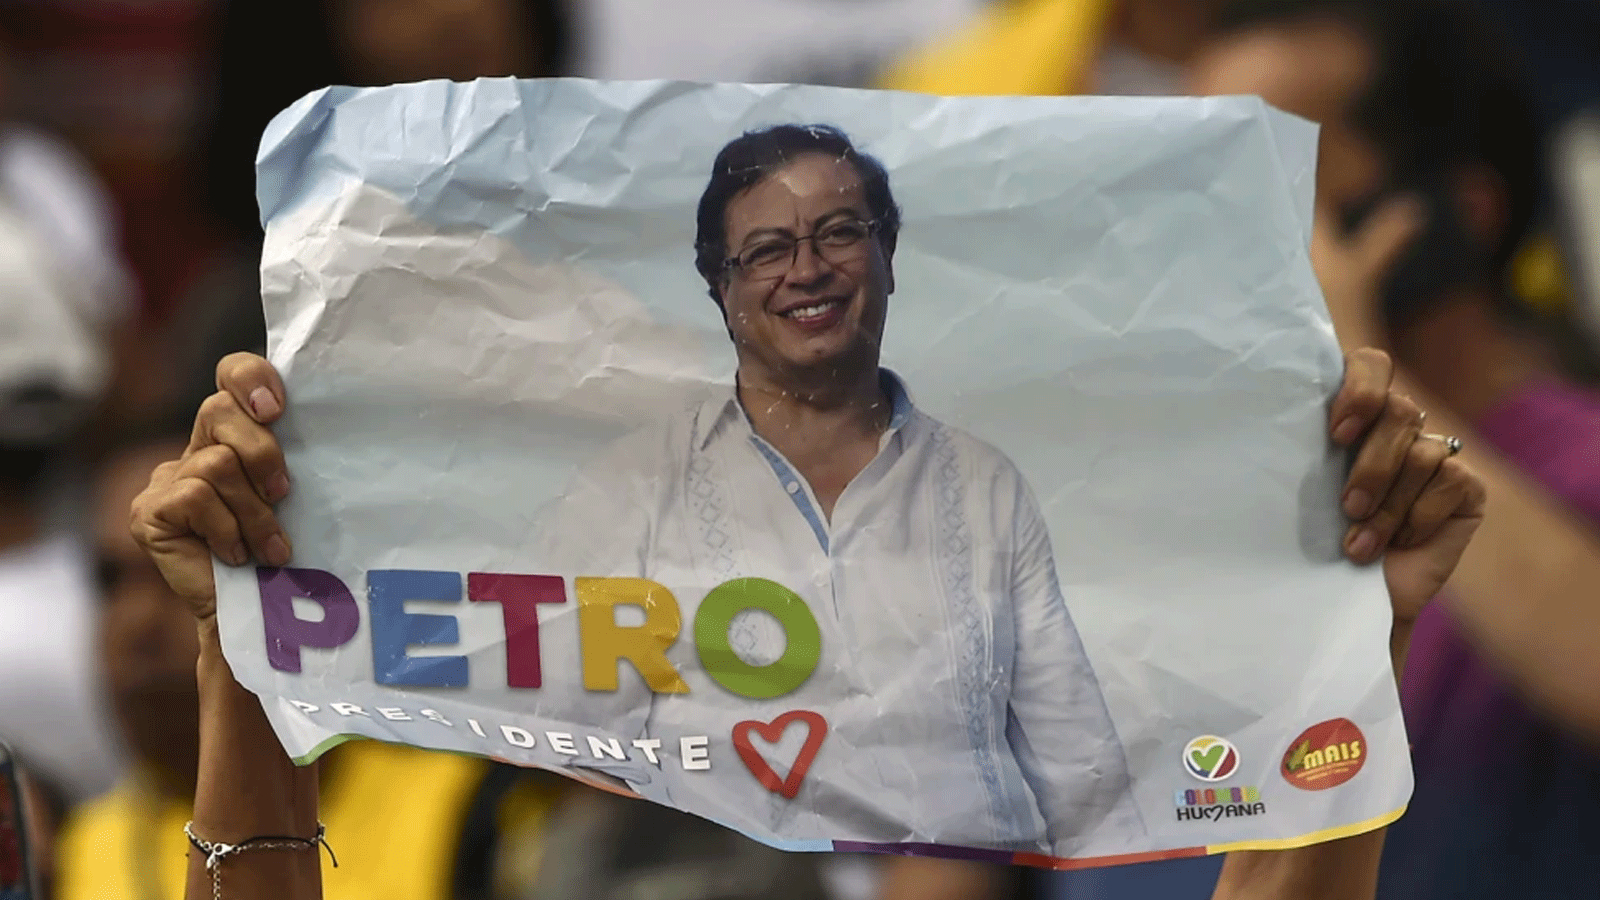 مناصر للمرشح الرئاسي الكولومبي غوستافو بيترو عن حزب كولومبيا هيومانا يحمل ملصقًا خلال تجمع انتخابي في كالي، كولومبيا 